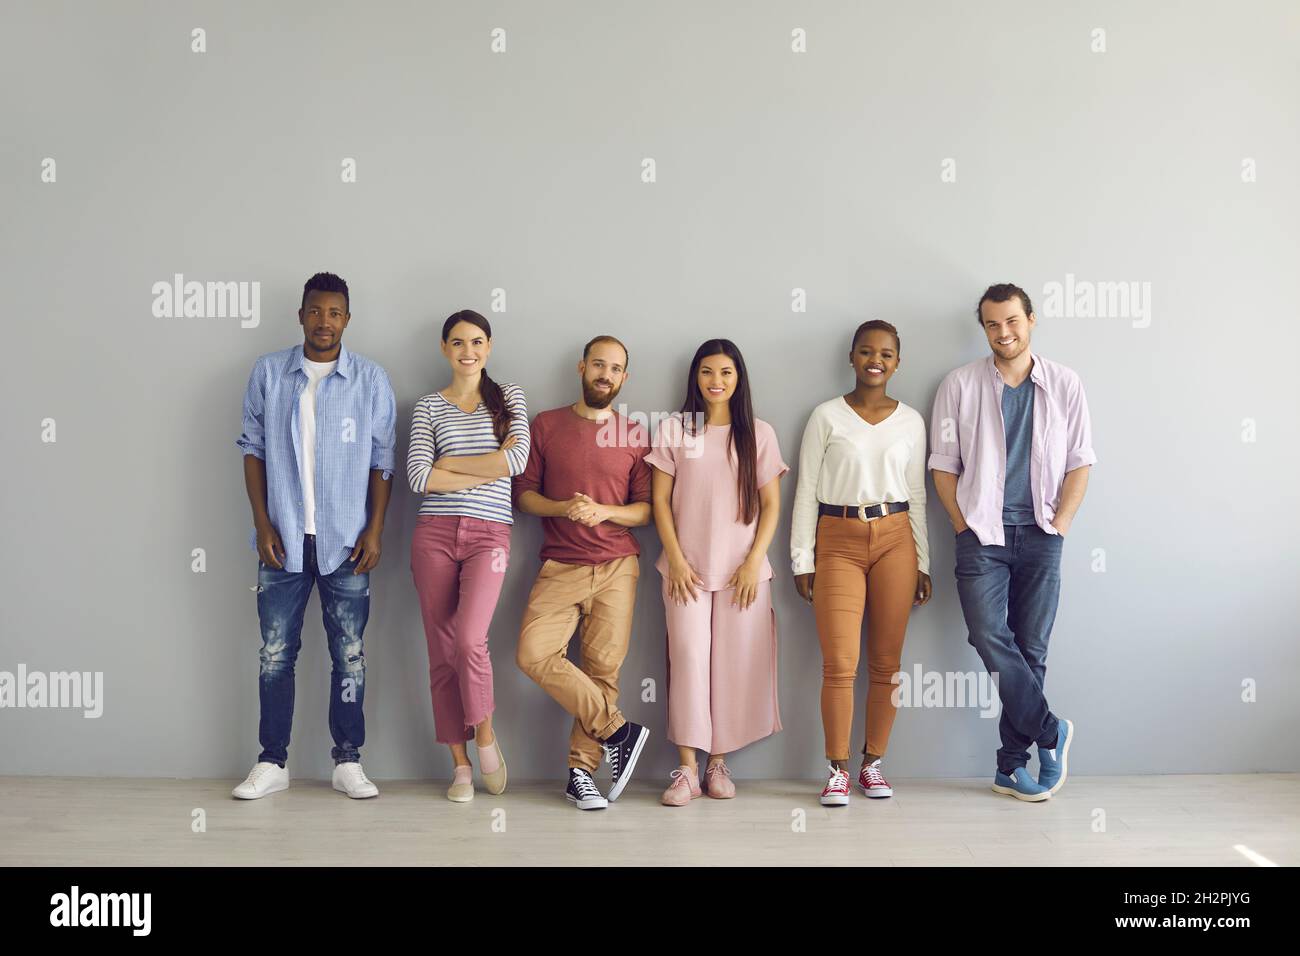 Porträt einer Gruppe lächelnder multirassischer Menschen, die in einer Reihe auf einem hellen Wandhintergrund stehen. Stockfoto